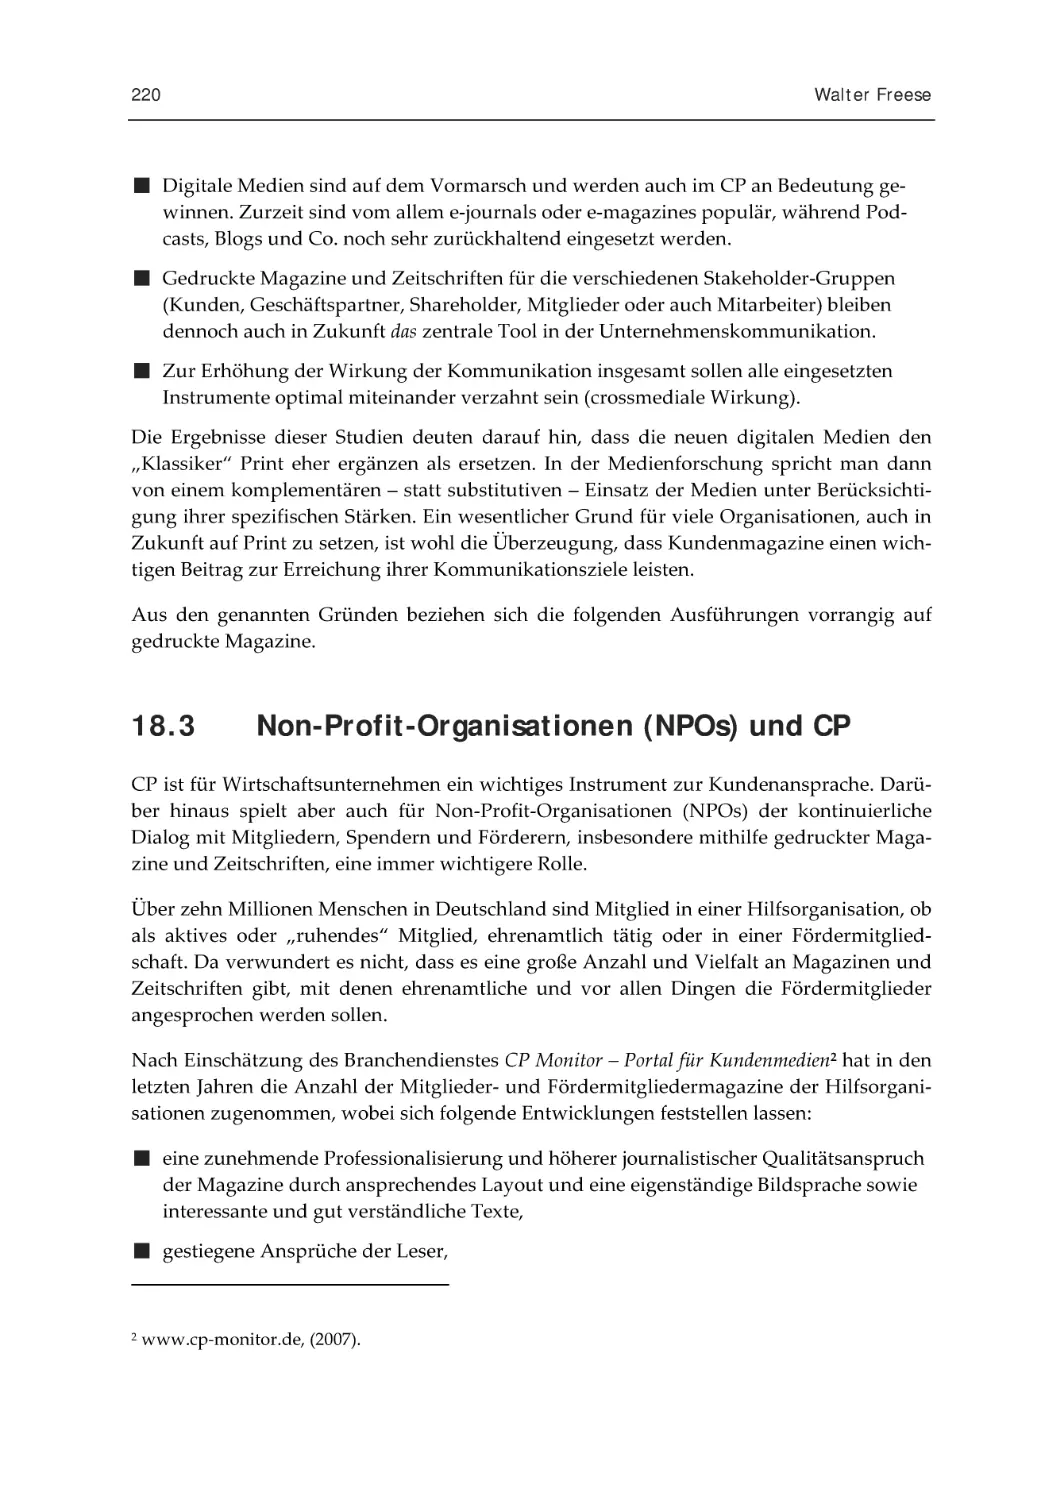 18.3 Non-Profit-Organisationen (NPOs) und CP